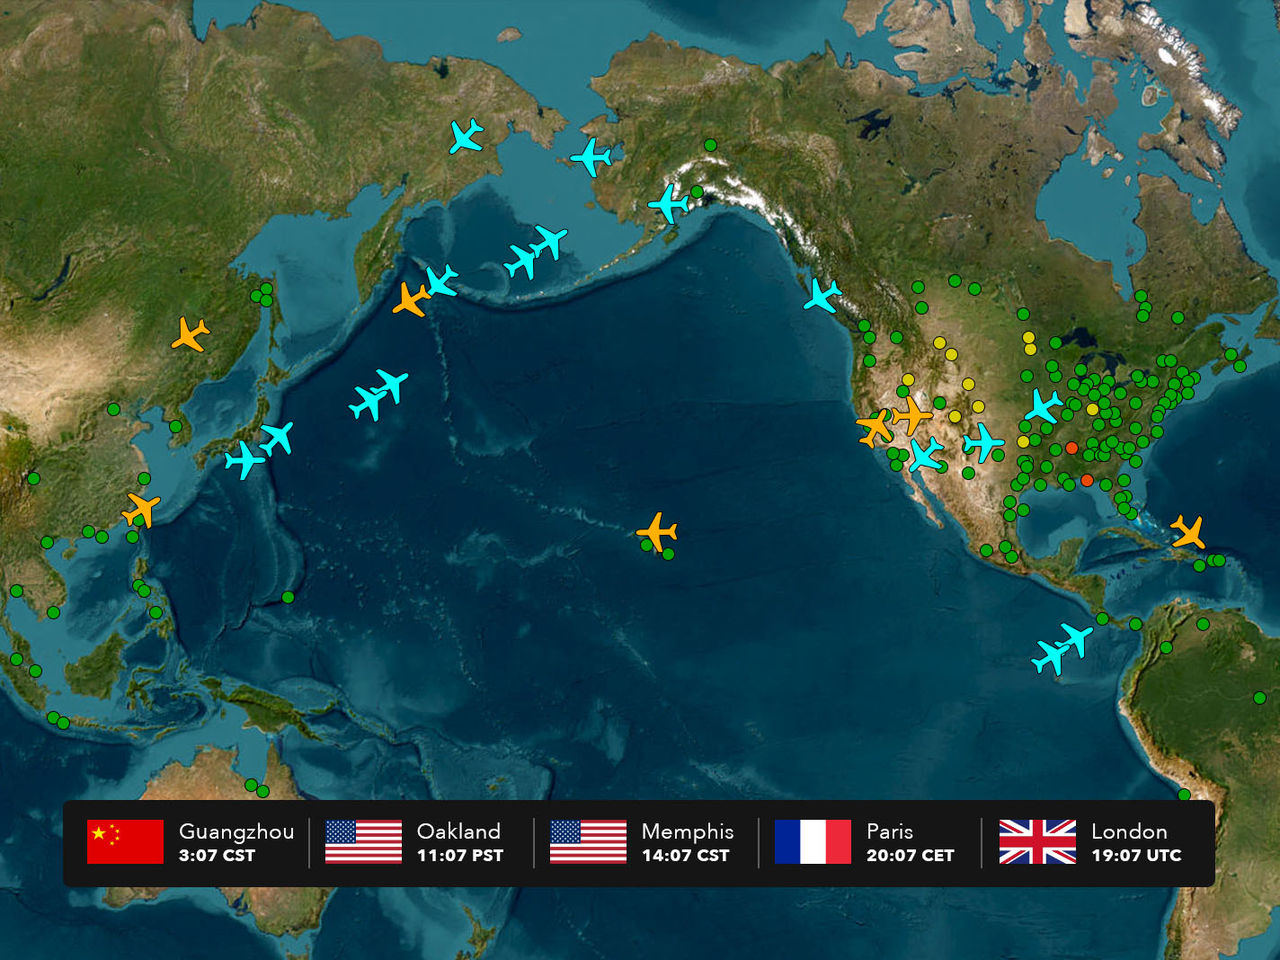 Mappa del globo che mostra punti e icone a forma di aereo in diversi colori con una barra in basso che mostra 5 fusi orari.